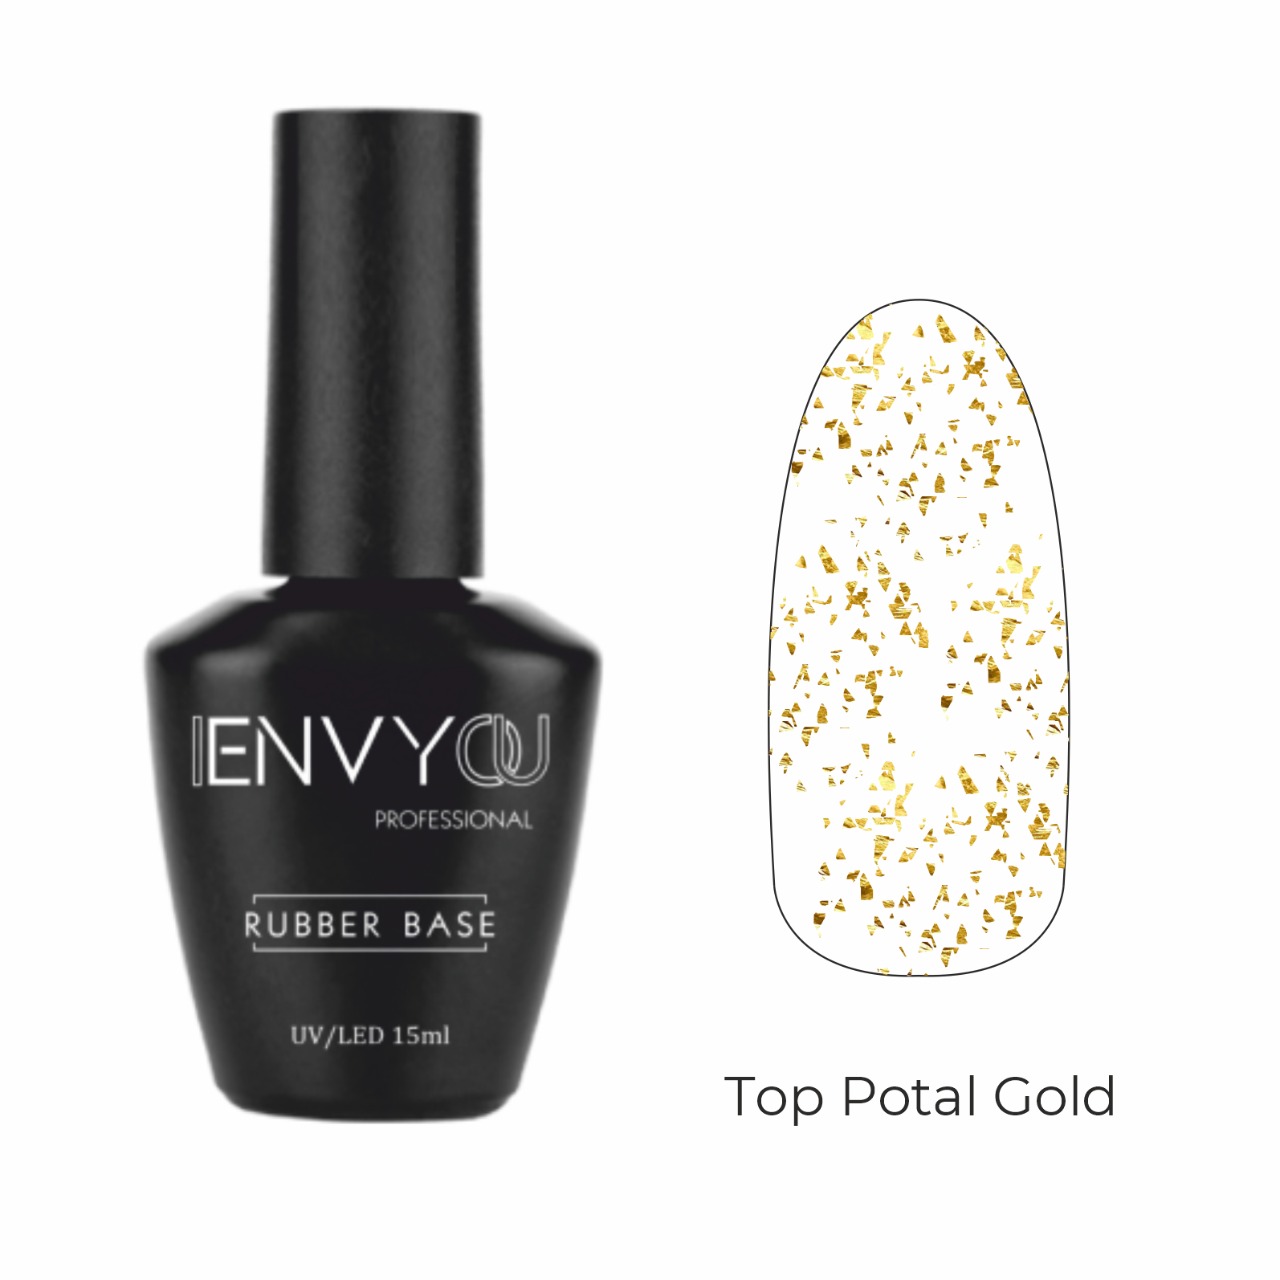 ENVY Top Potal Gold 15ml